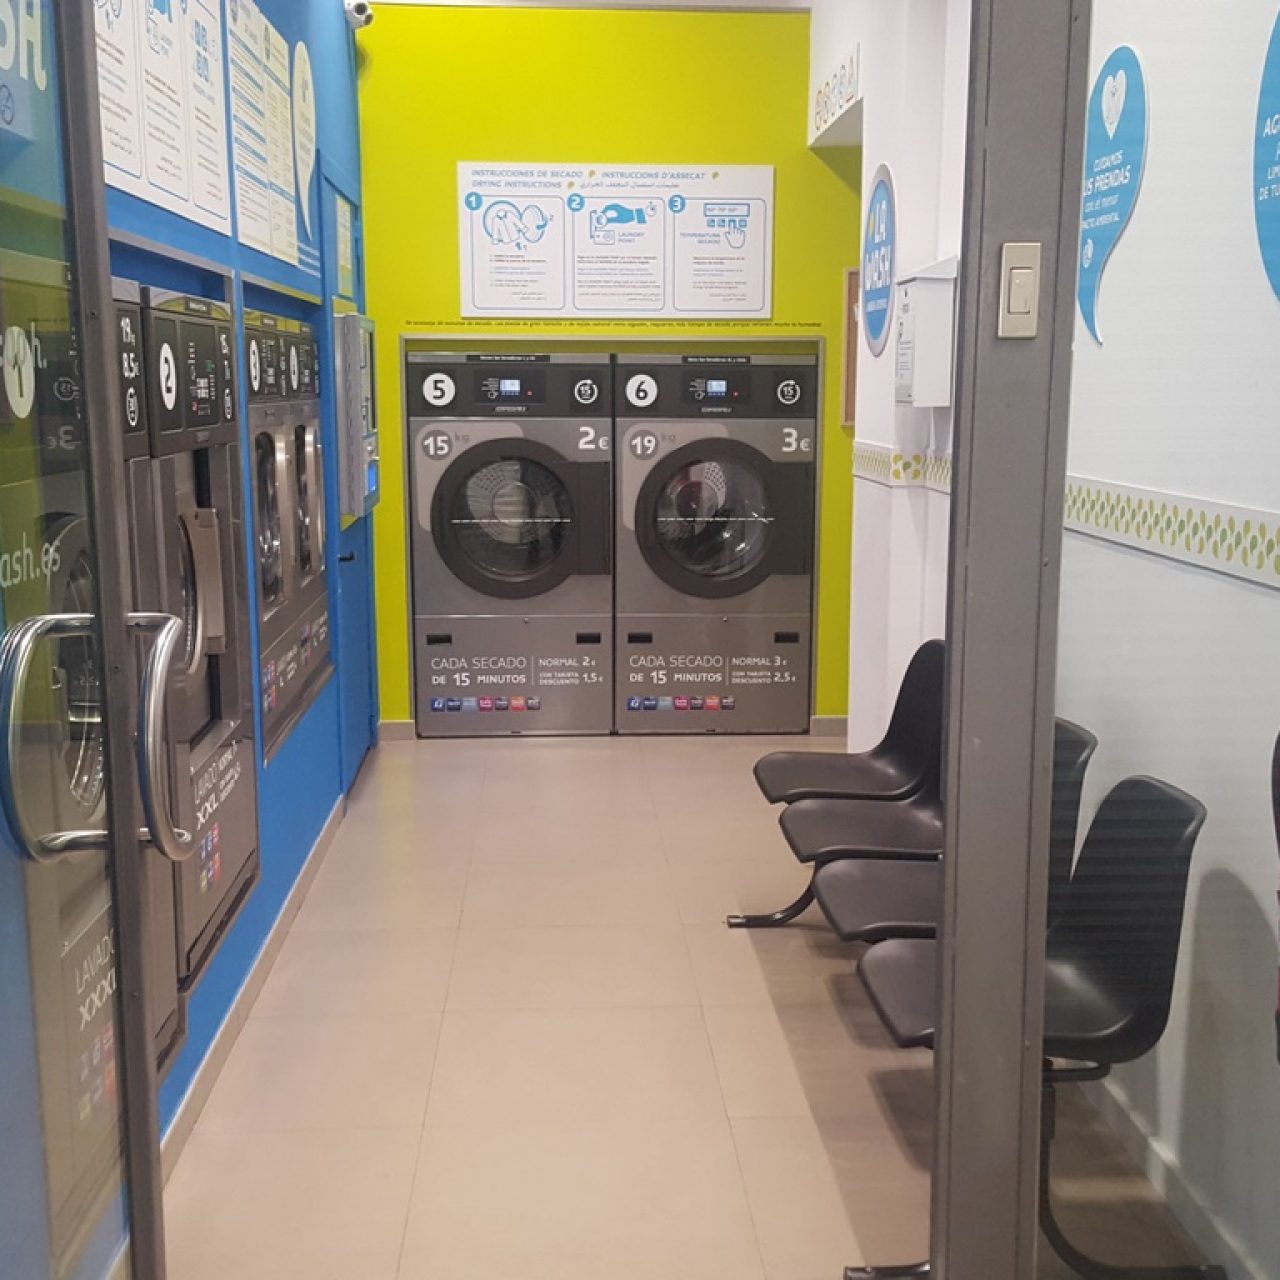 lavanderia-automatica-la-wash-corsega-401-barcelona